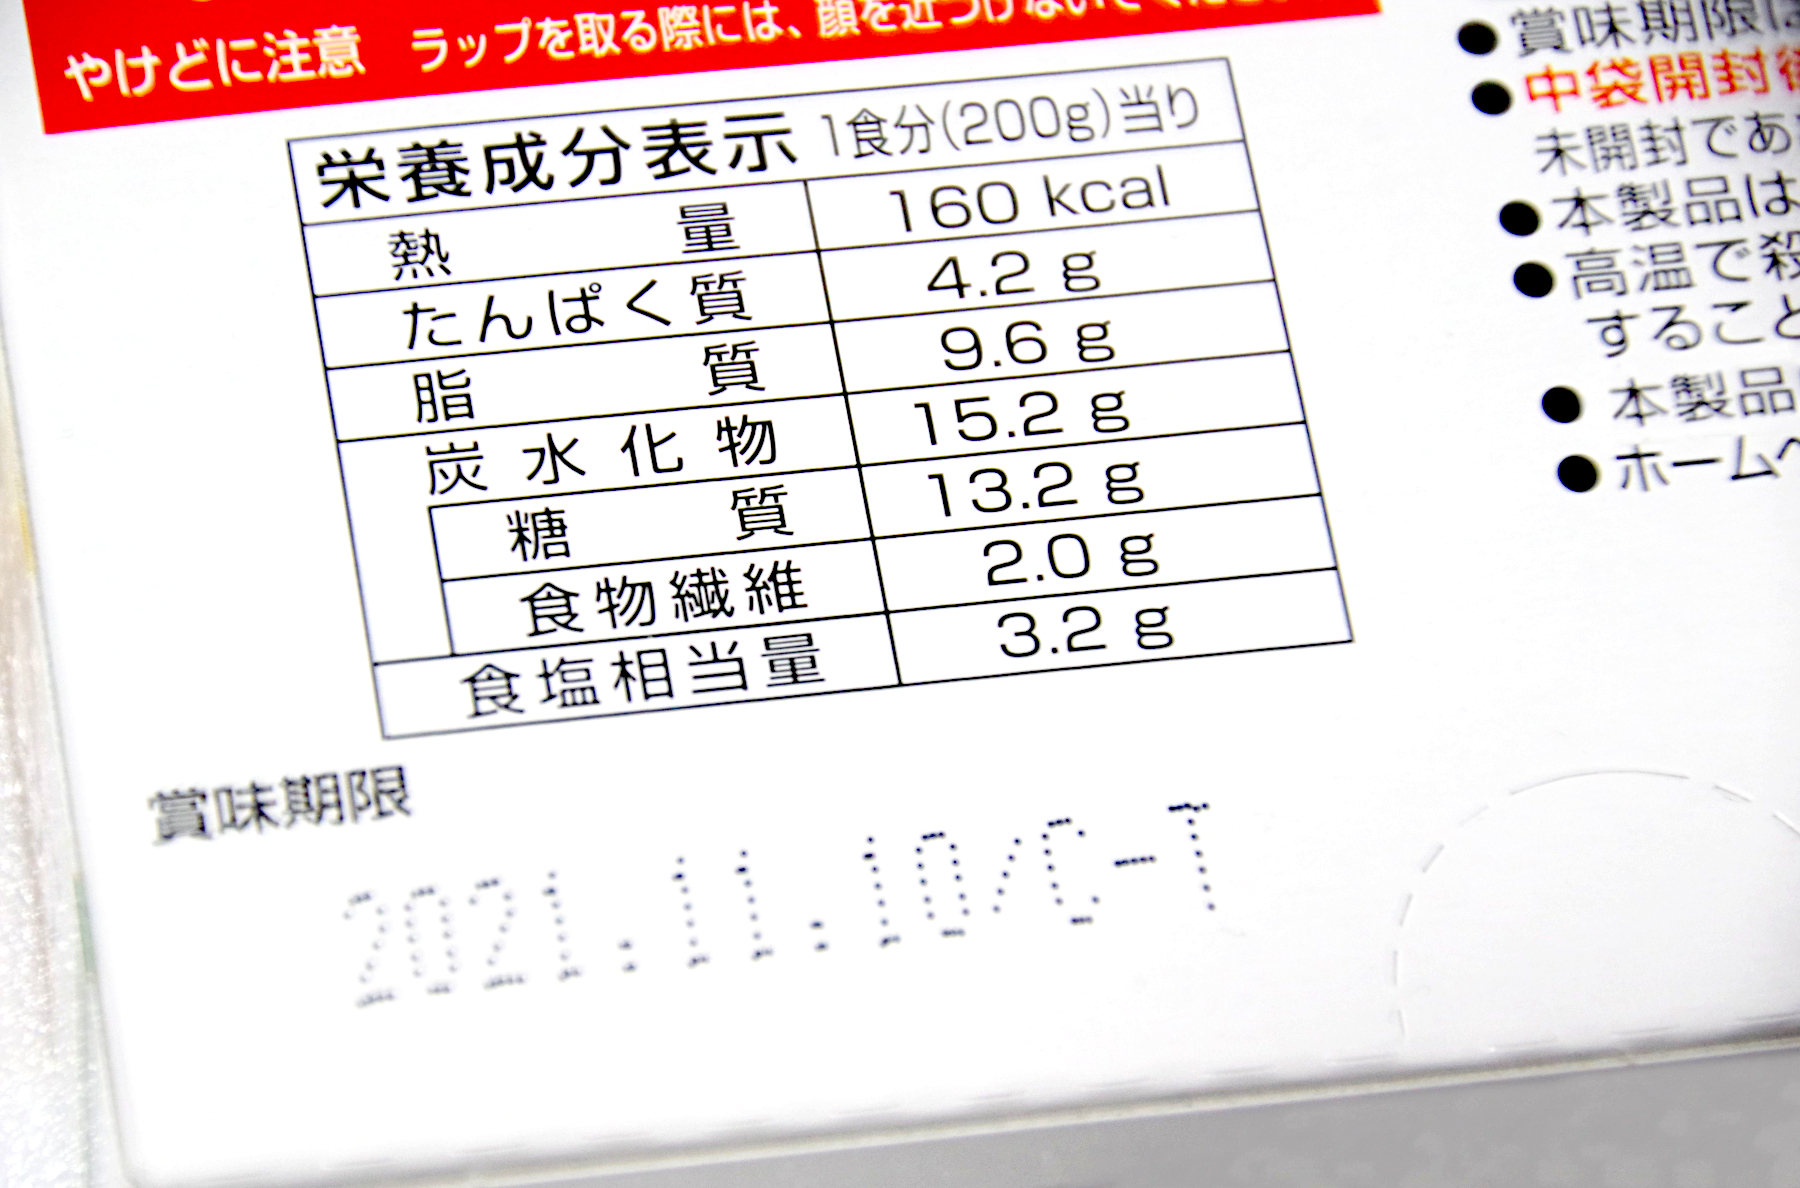 商品パッケージに記載されている栄養成分表示